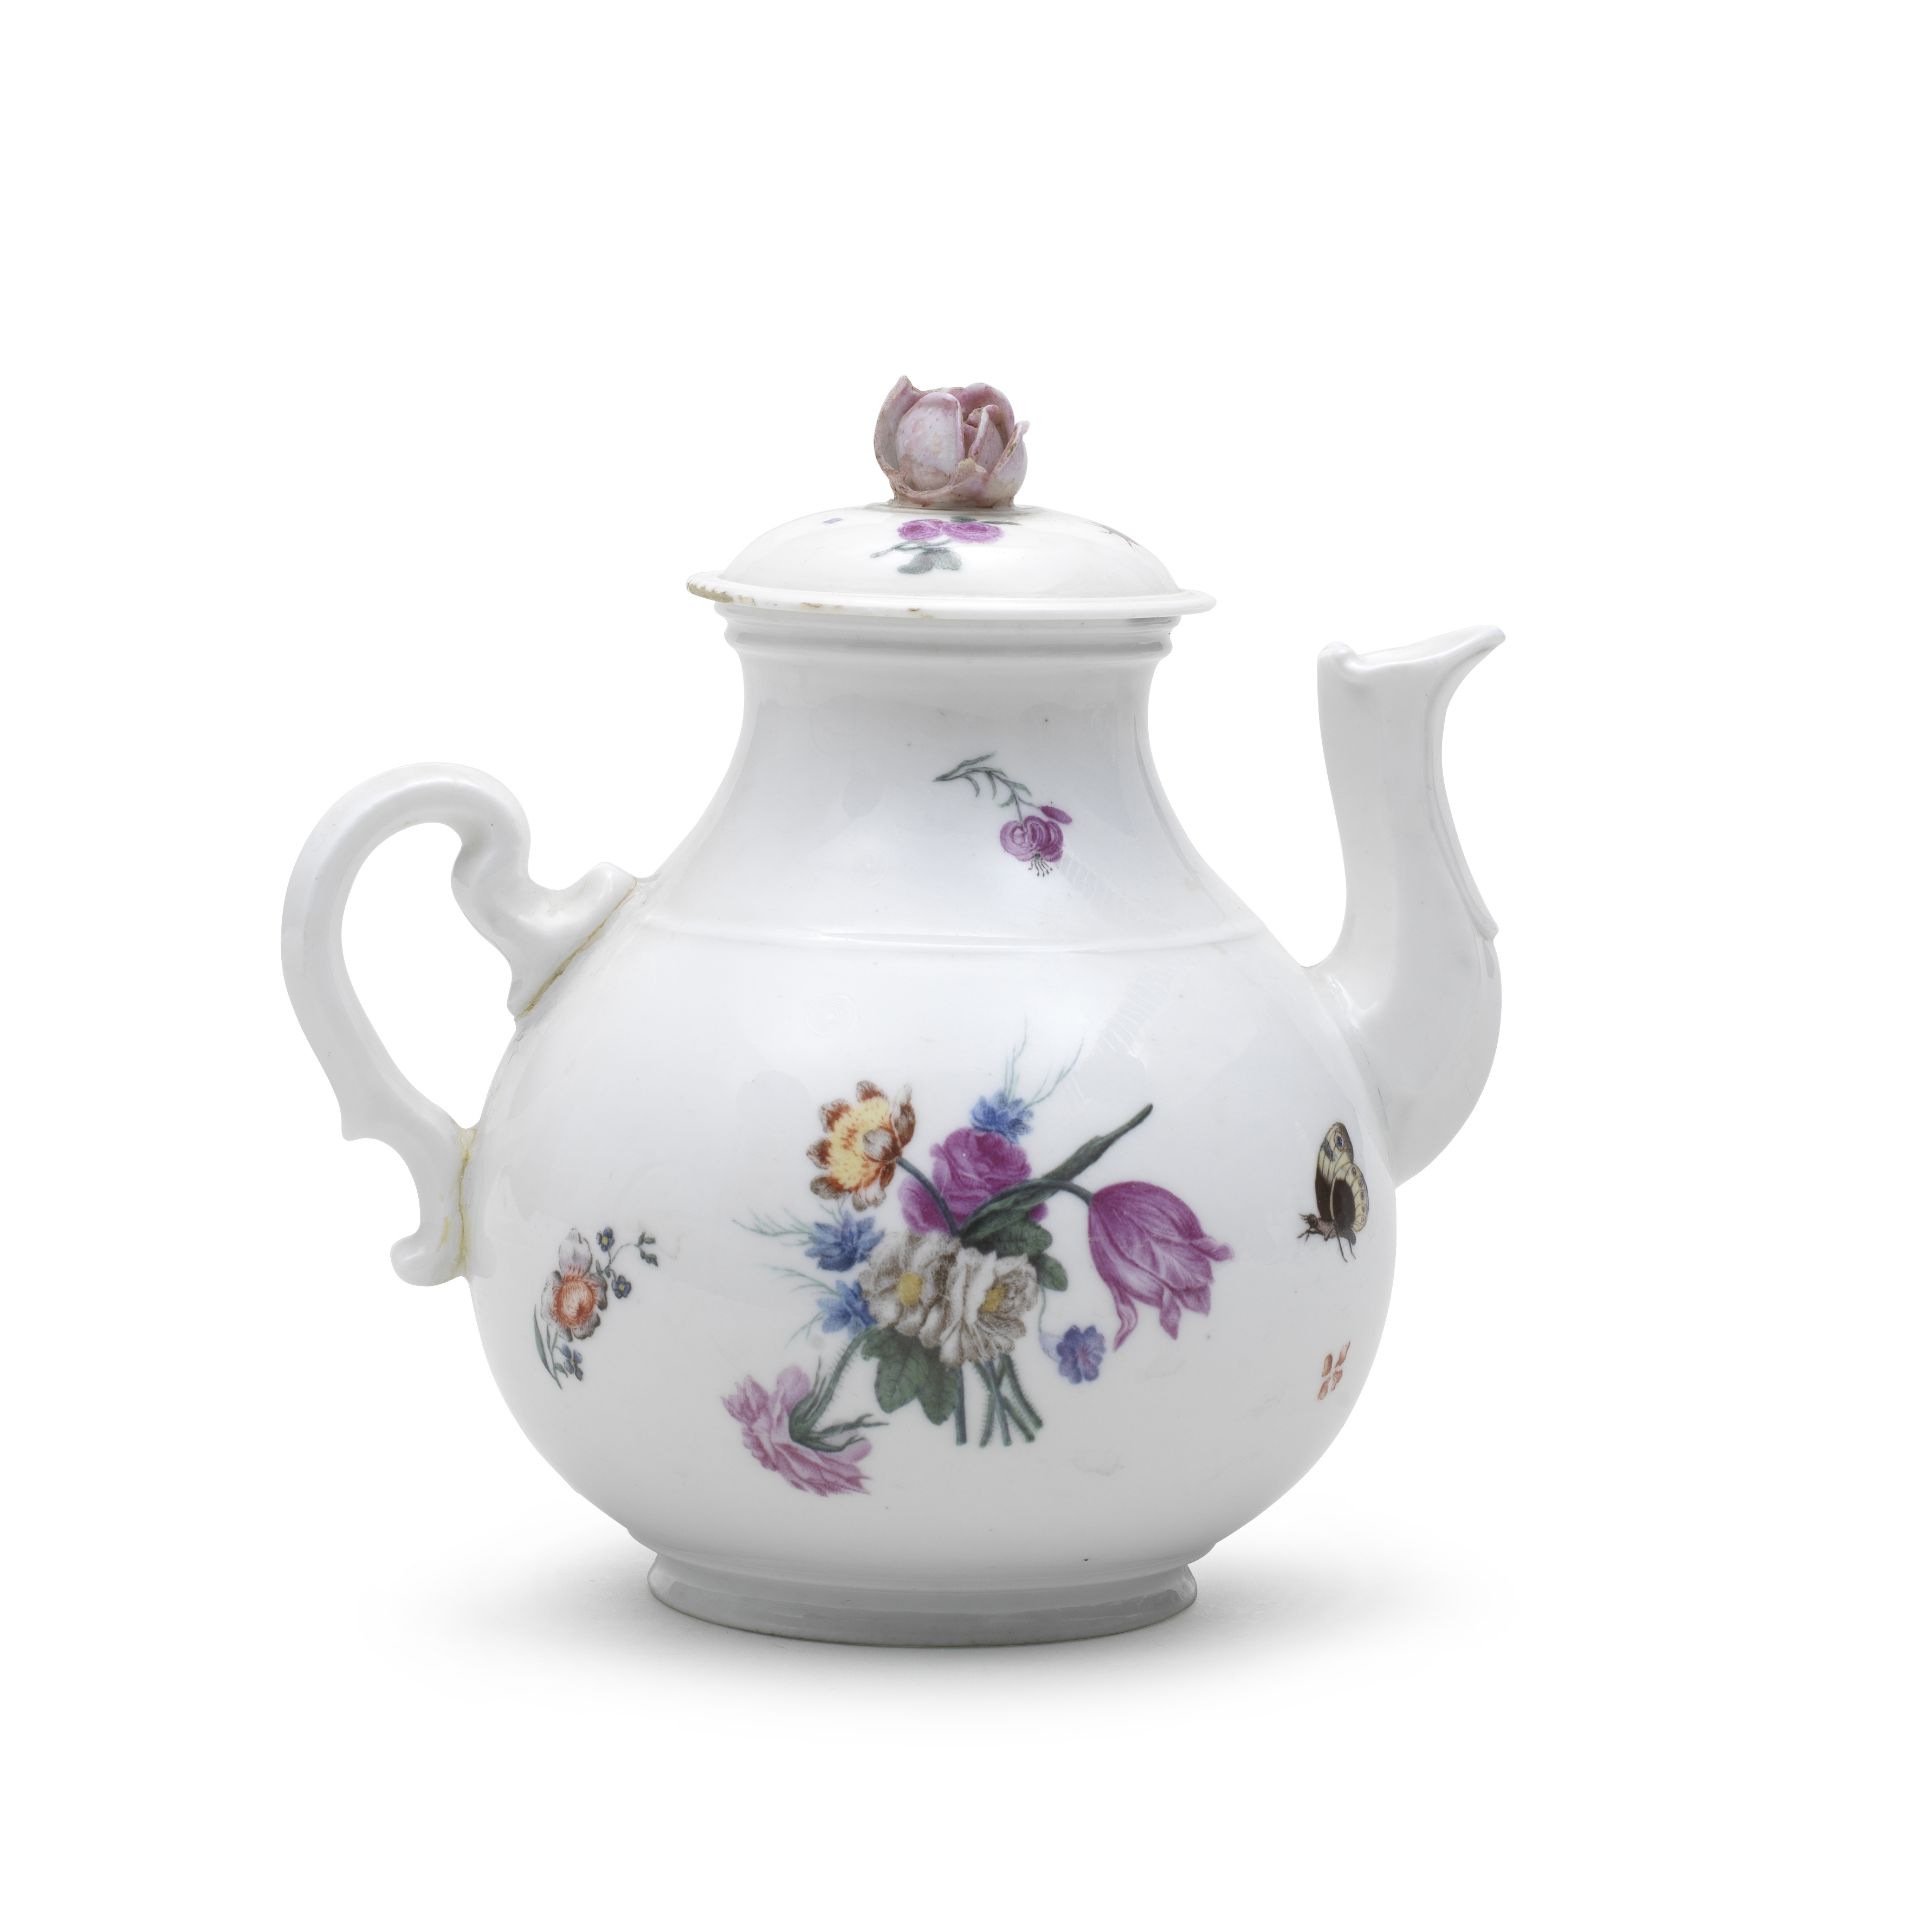 A rare Capodimonte teapot and cover, circa 1750